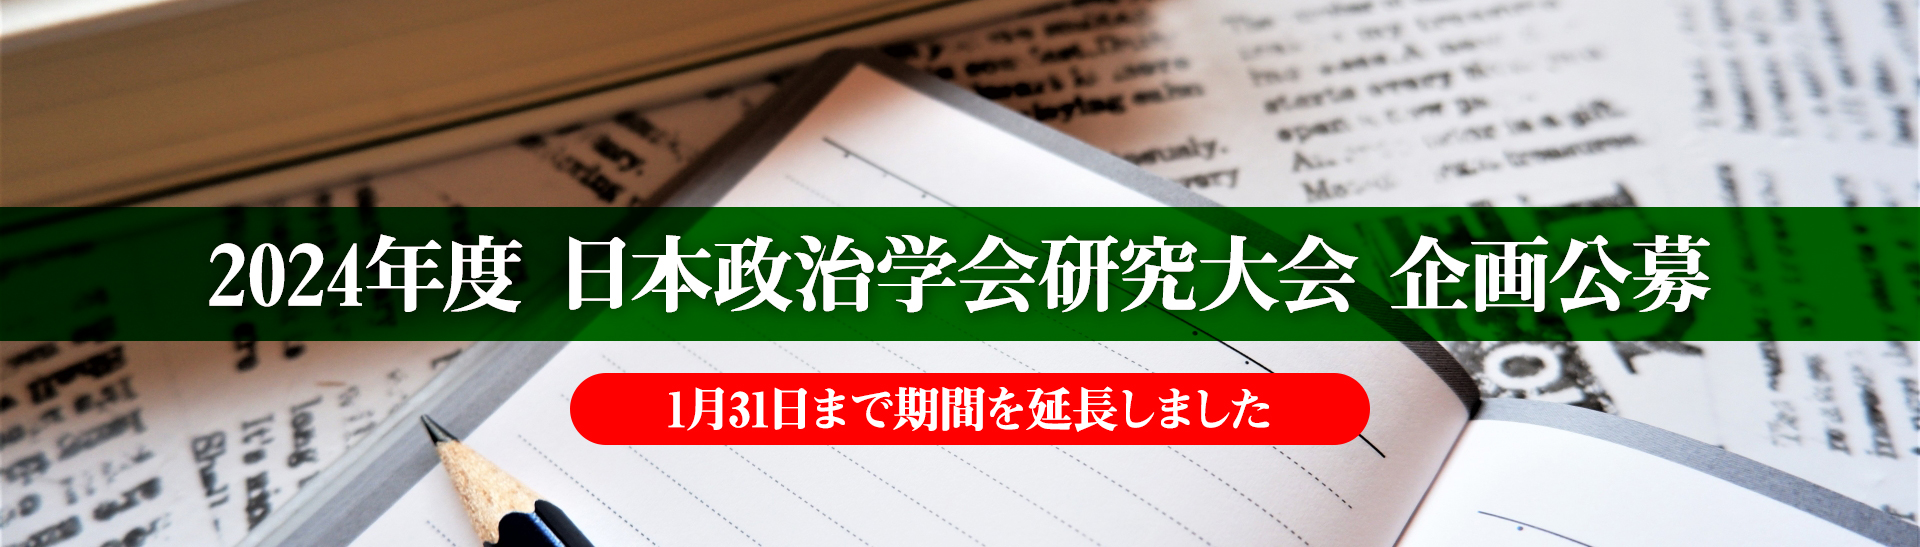 2024年度 日本政治学会研究大会 企画公募